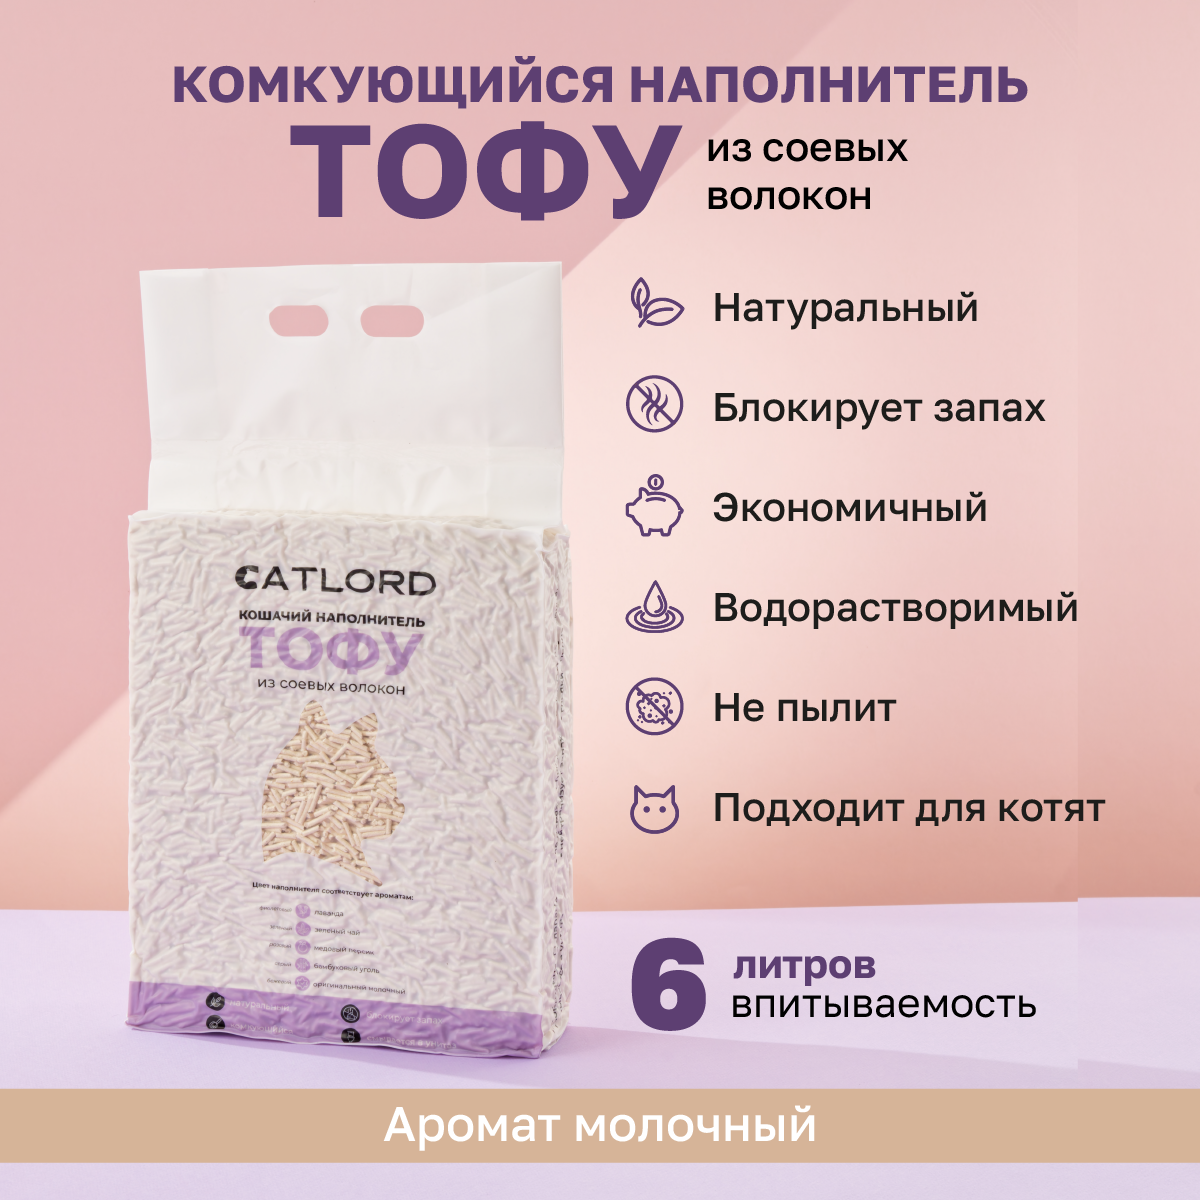 Комкующийся соевый наполнитель Cat Lord Тофу молочный 6 литров